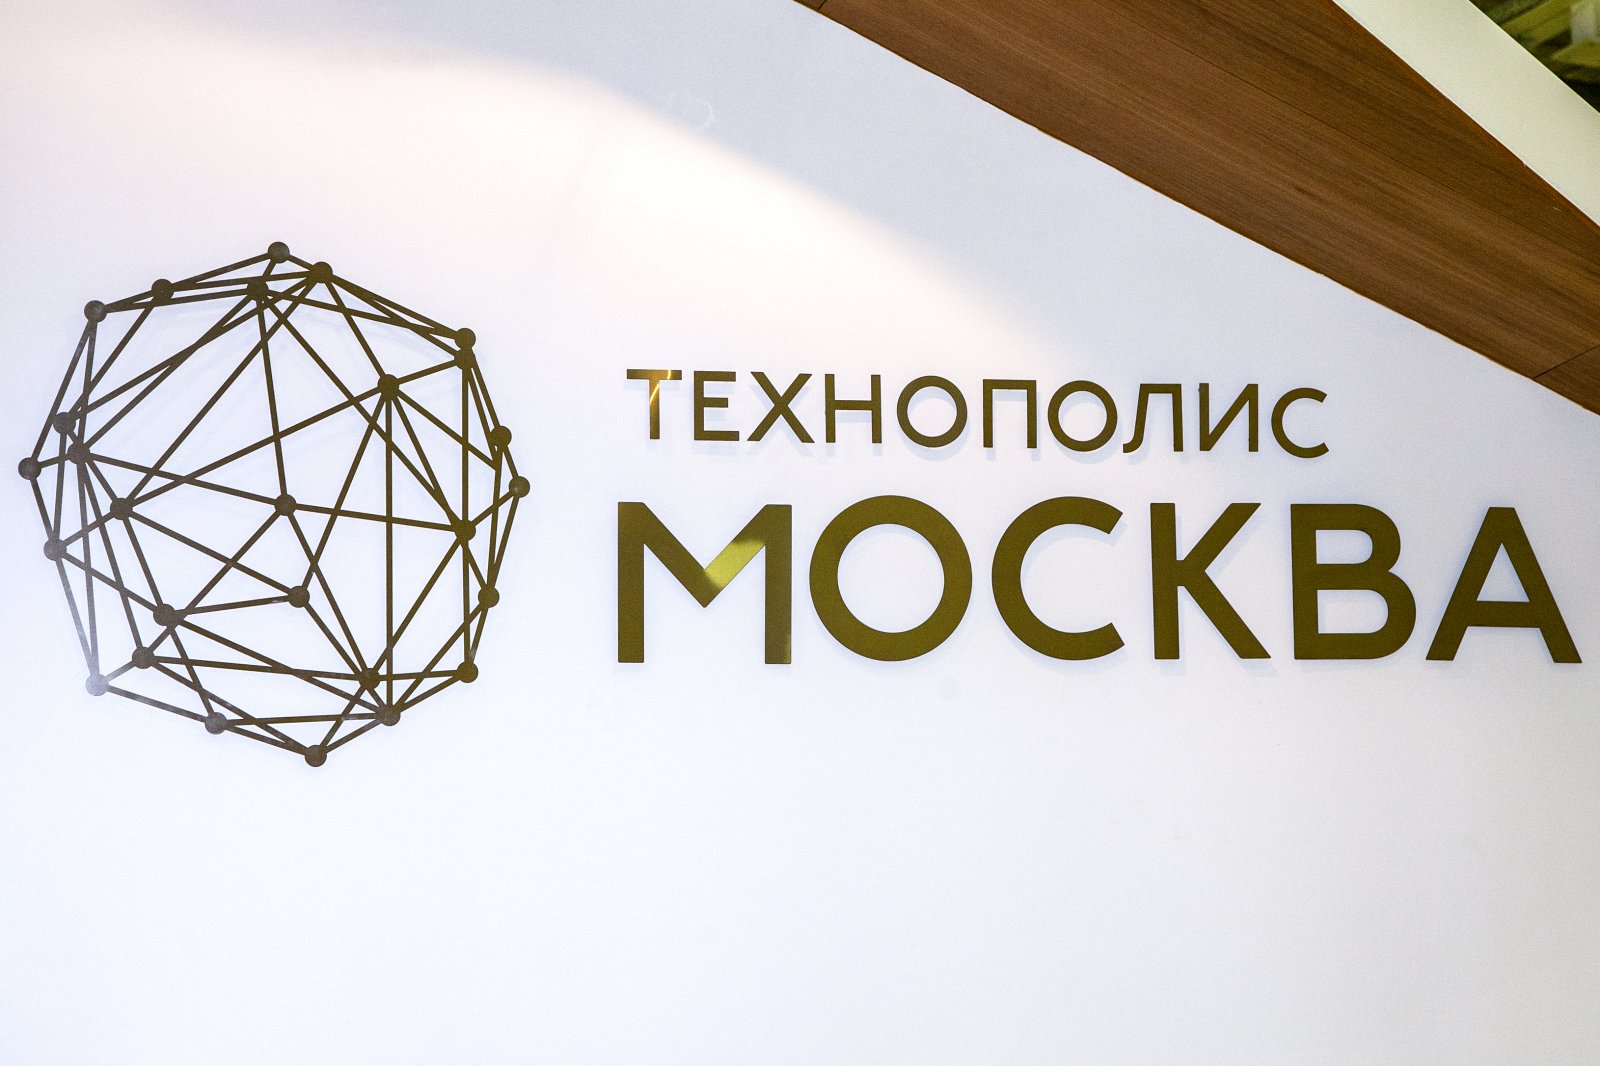 Компания из технополиса "Москва" разработала инновационные материалы для строительства зданий в Арктике - фото 1